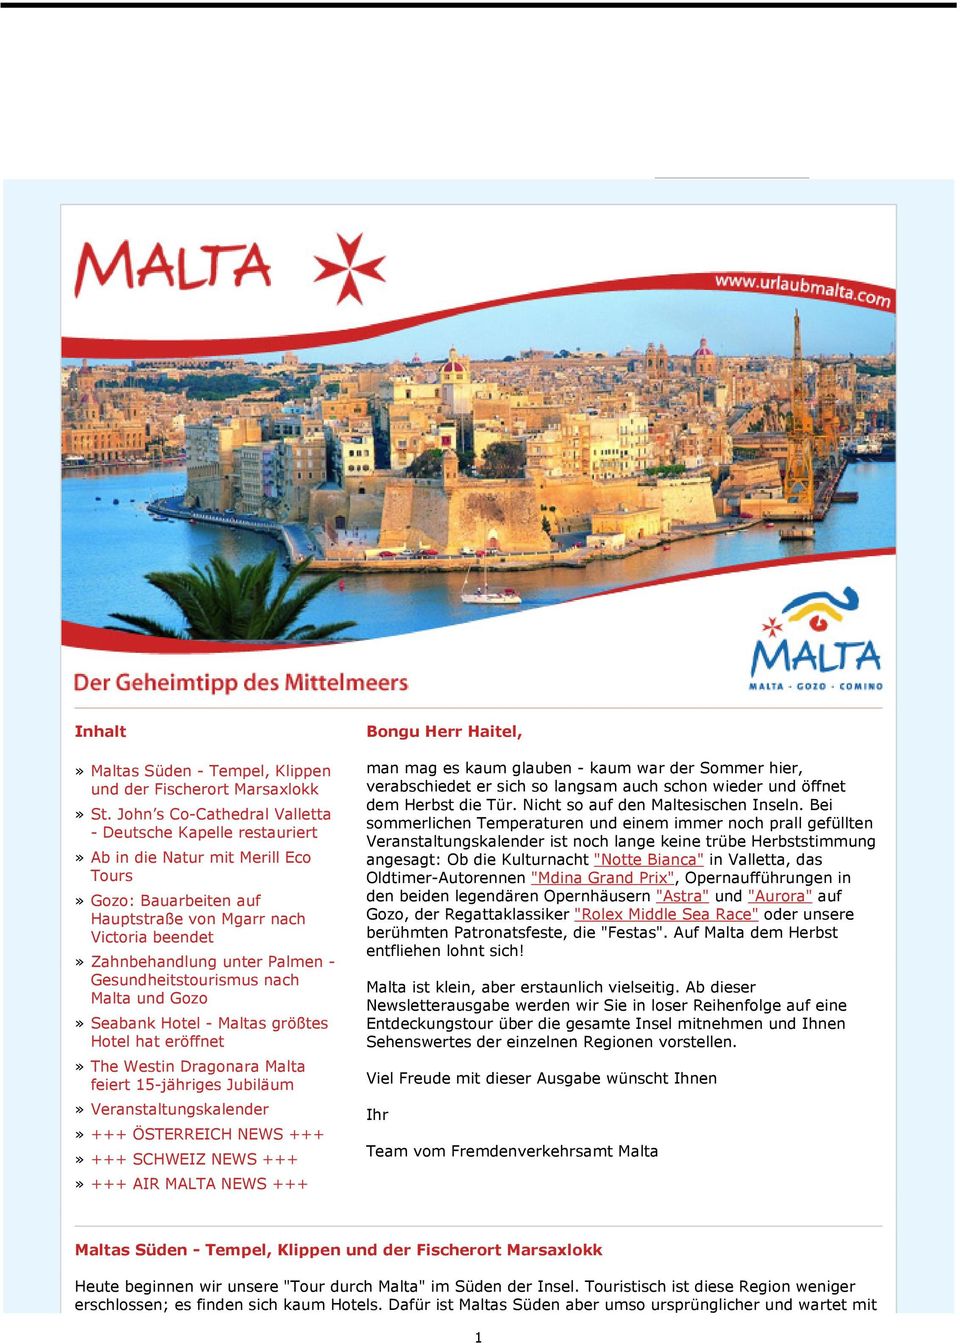 Gesundheitstourismus nach Malta und Gozo» Seabank Hotel - Maltas größtes Hotel hat eröffnet» The Westin Dragonara Malta feiert 15-jähriges Jubiläum» Veranstaltungskalender» +++ ÖSTERREICH NEWS +++»